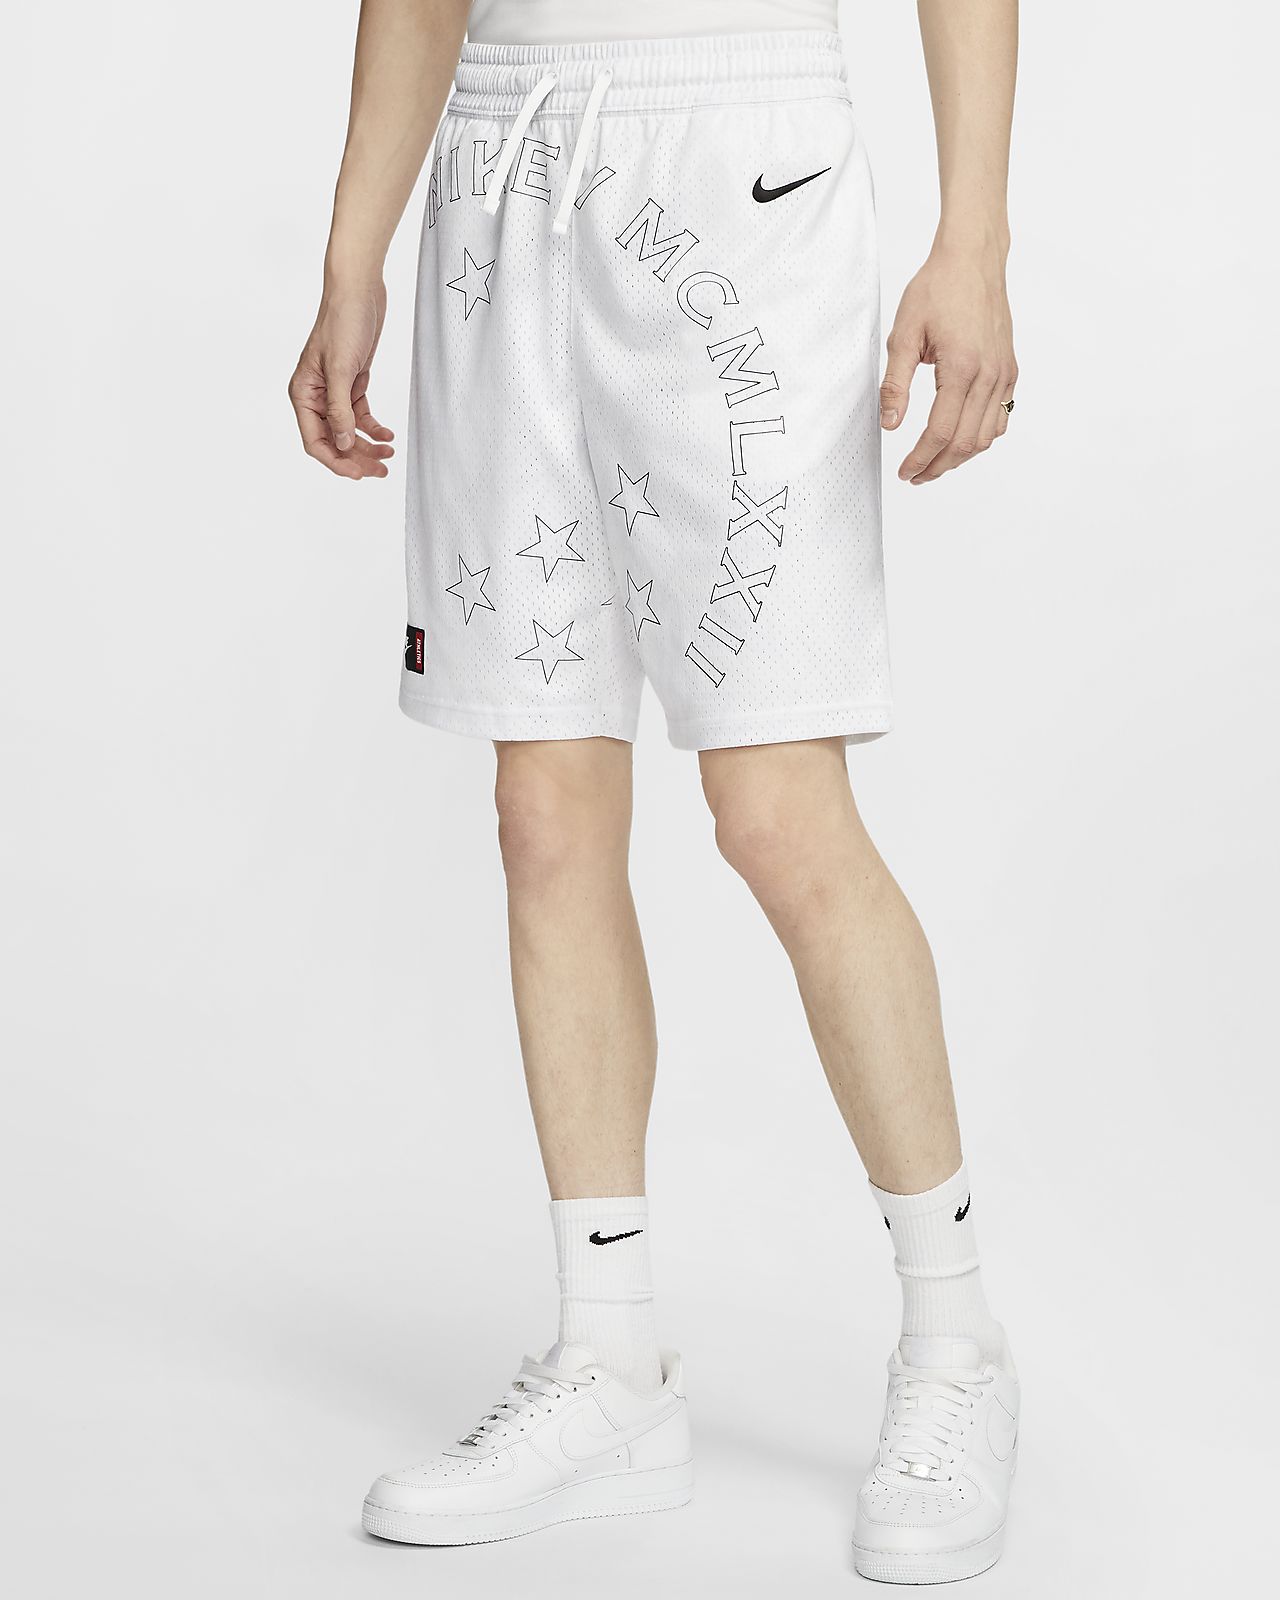 Nike Sportswear Men's Shorts. Nike CH